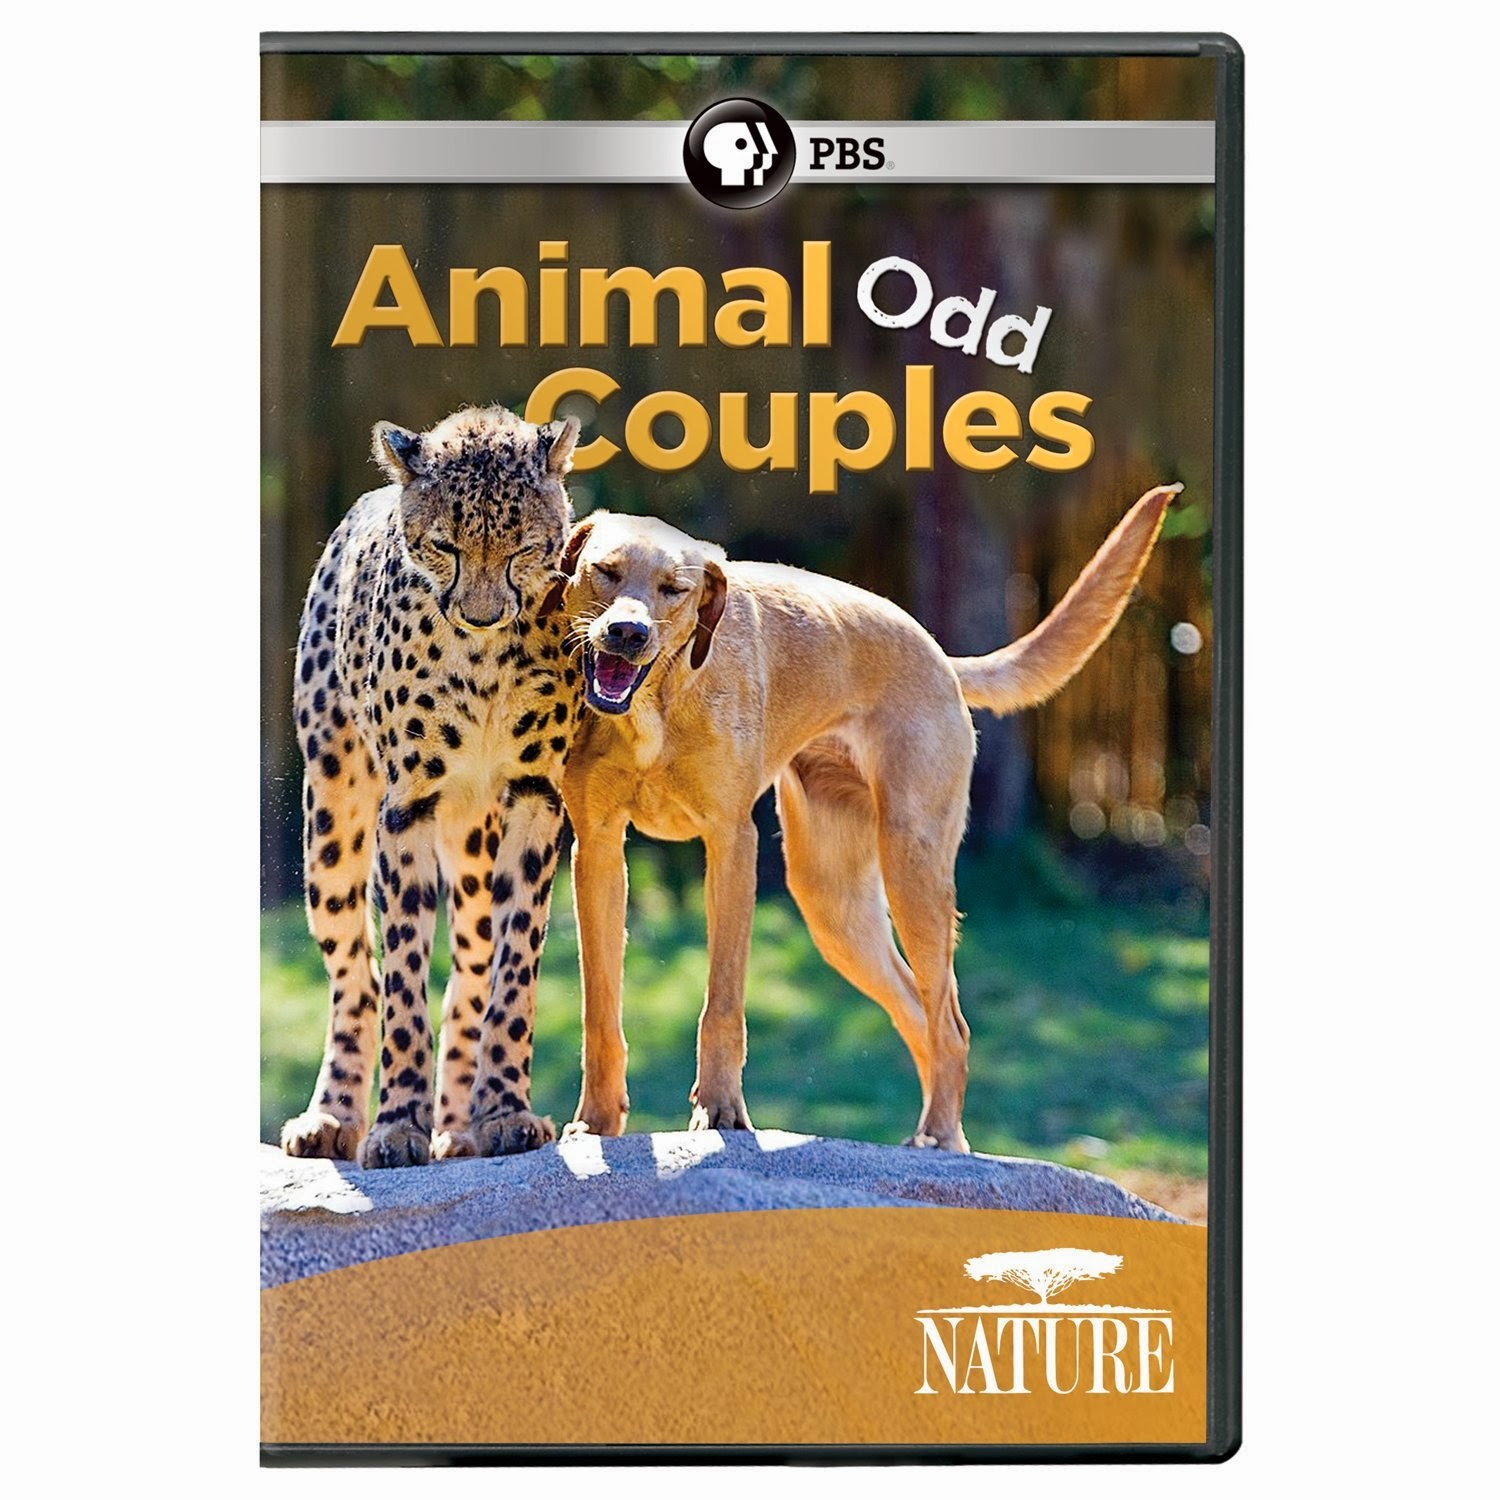 Animal coupling. PBS nature DVD. Odd animal.